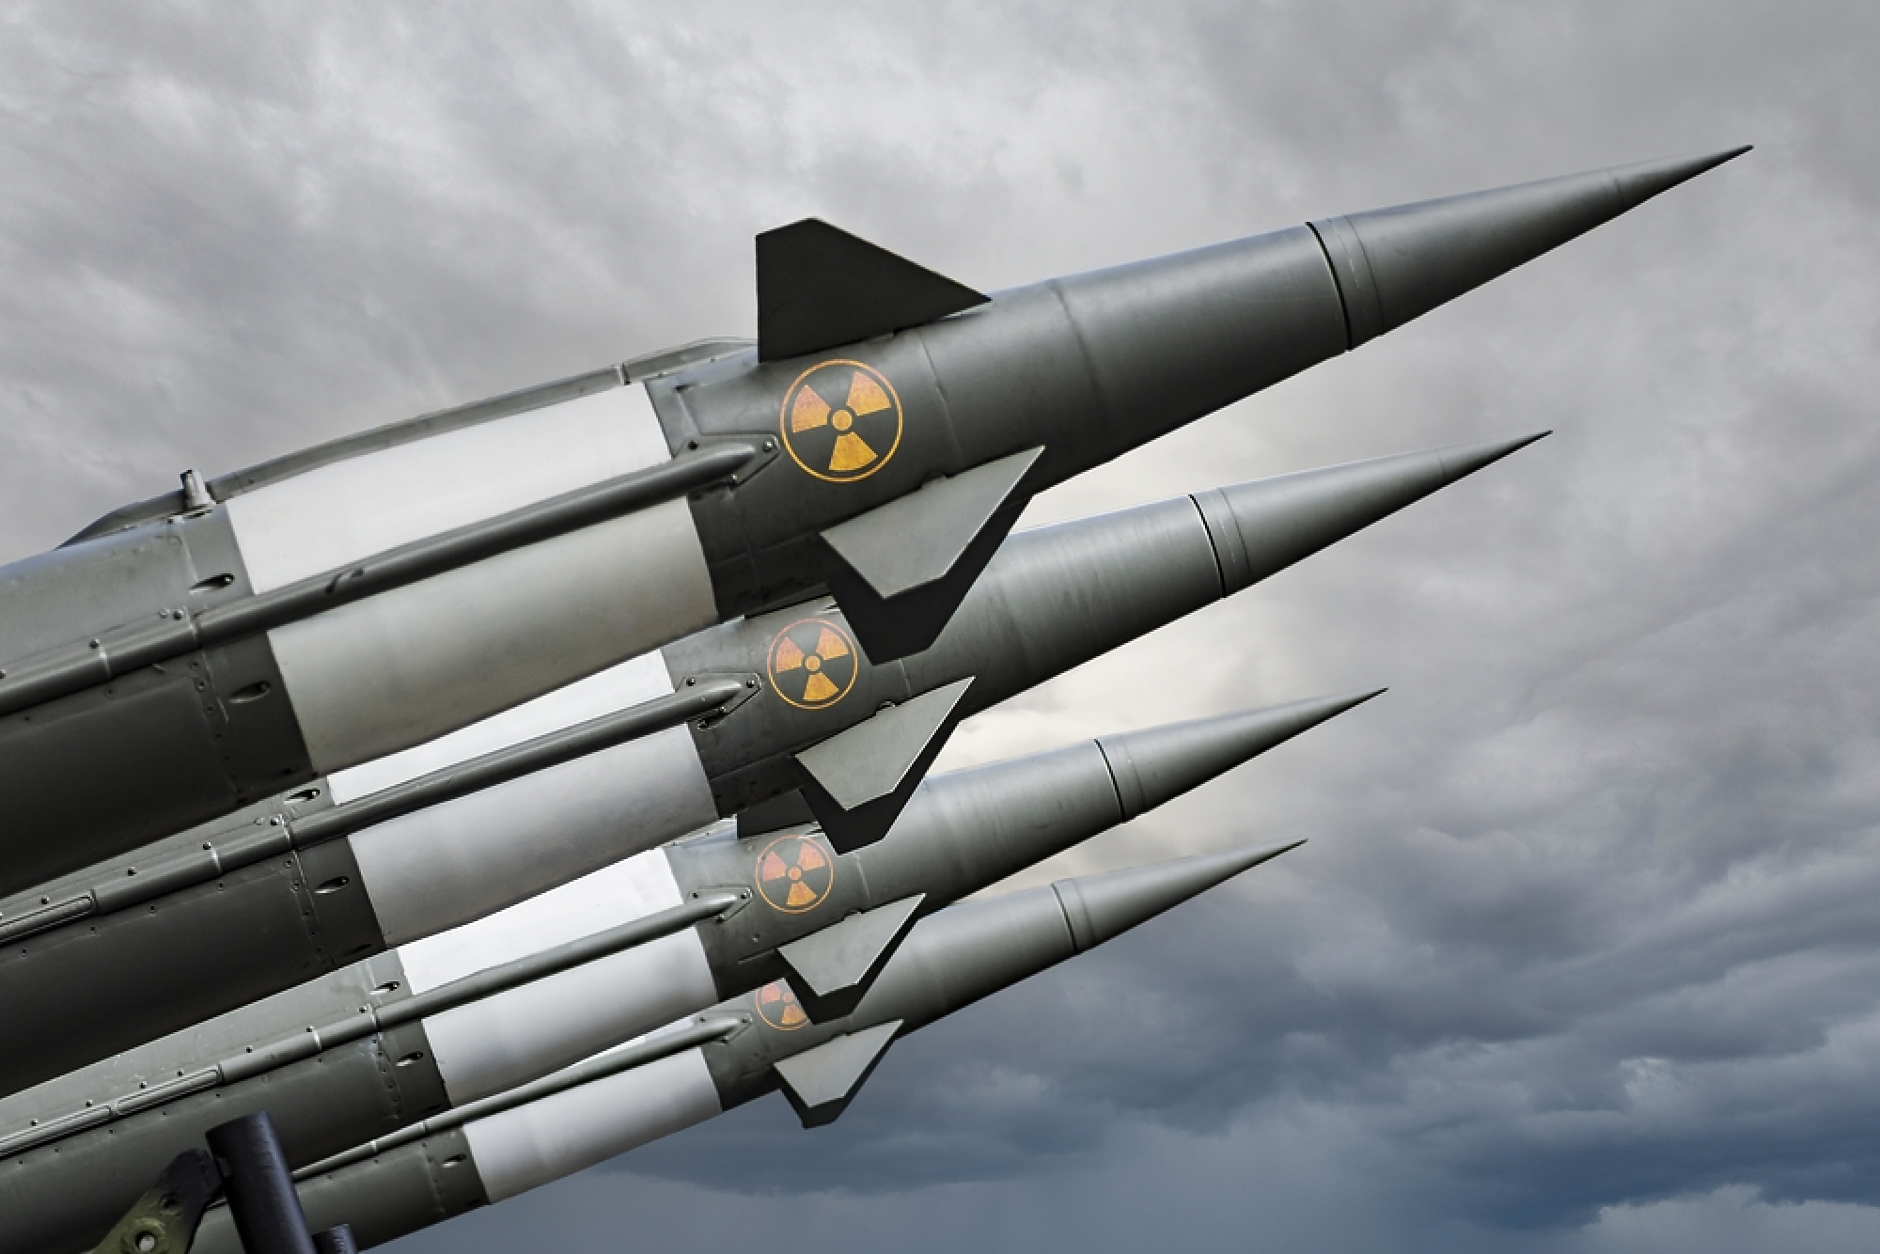 САЩ планират да разположат ядрени оръжия в Обединеното кралство 